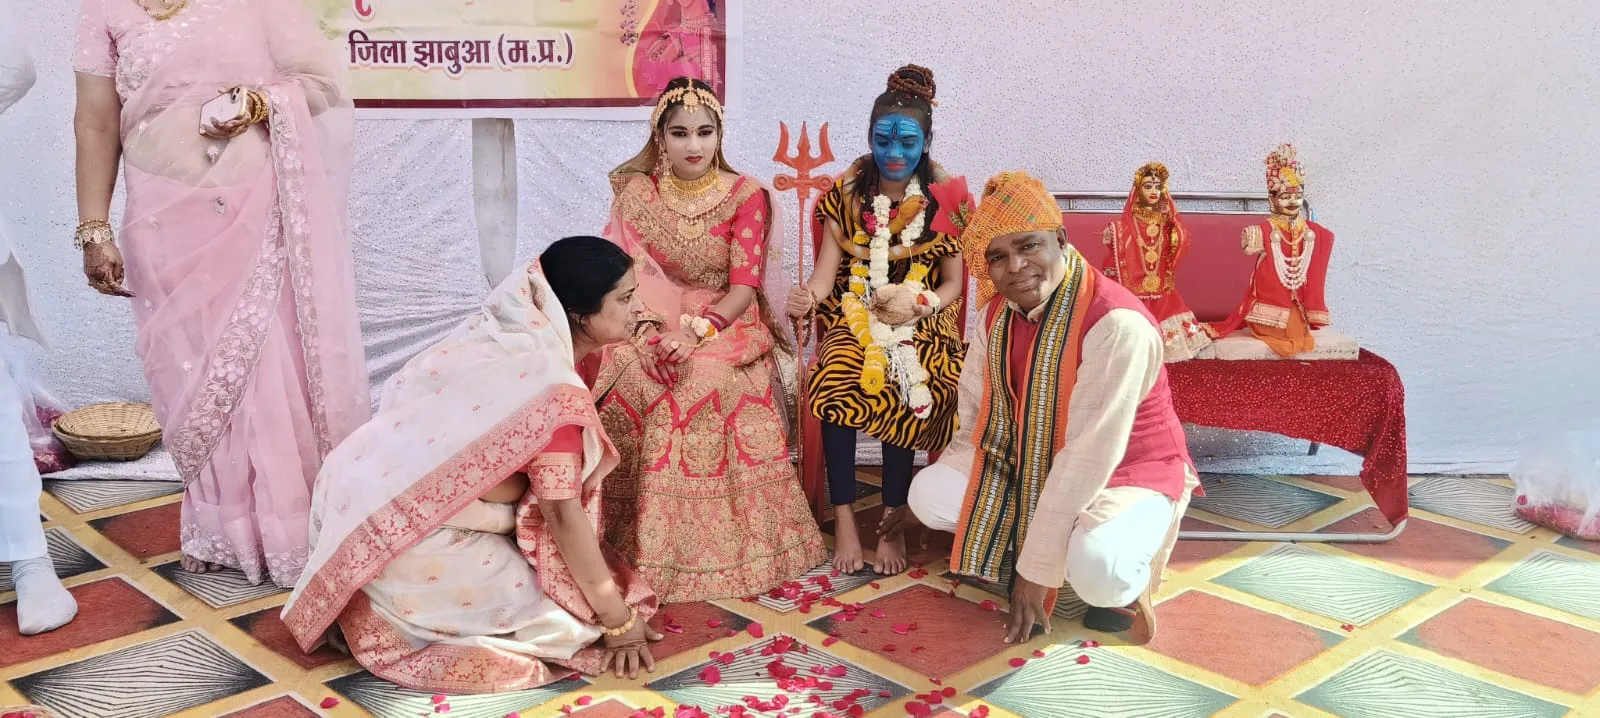 धूमधाम से हुआ शिव विवाह, महा शिवरात्रि महापर्व पर निकाला गया भव्य शोभा यात्रा | New India Times